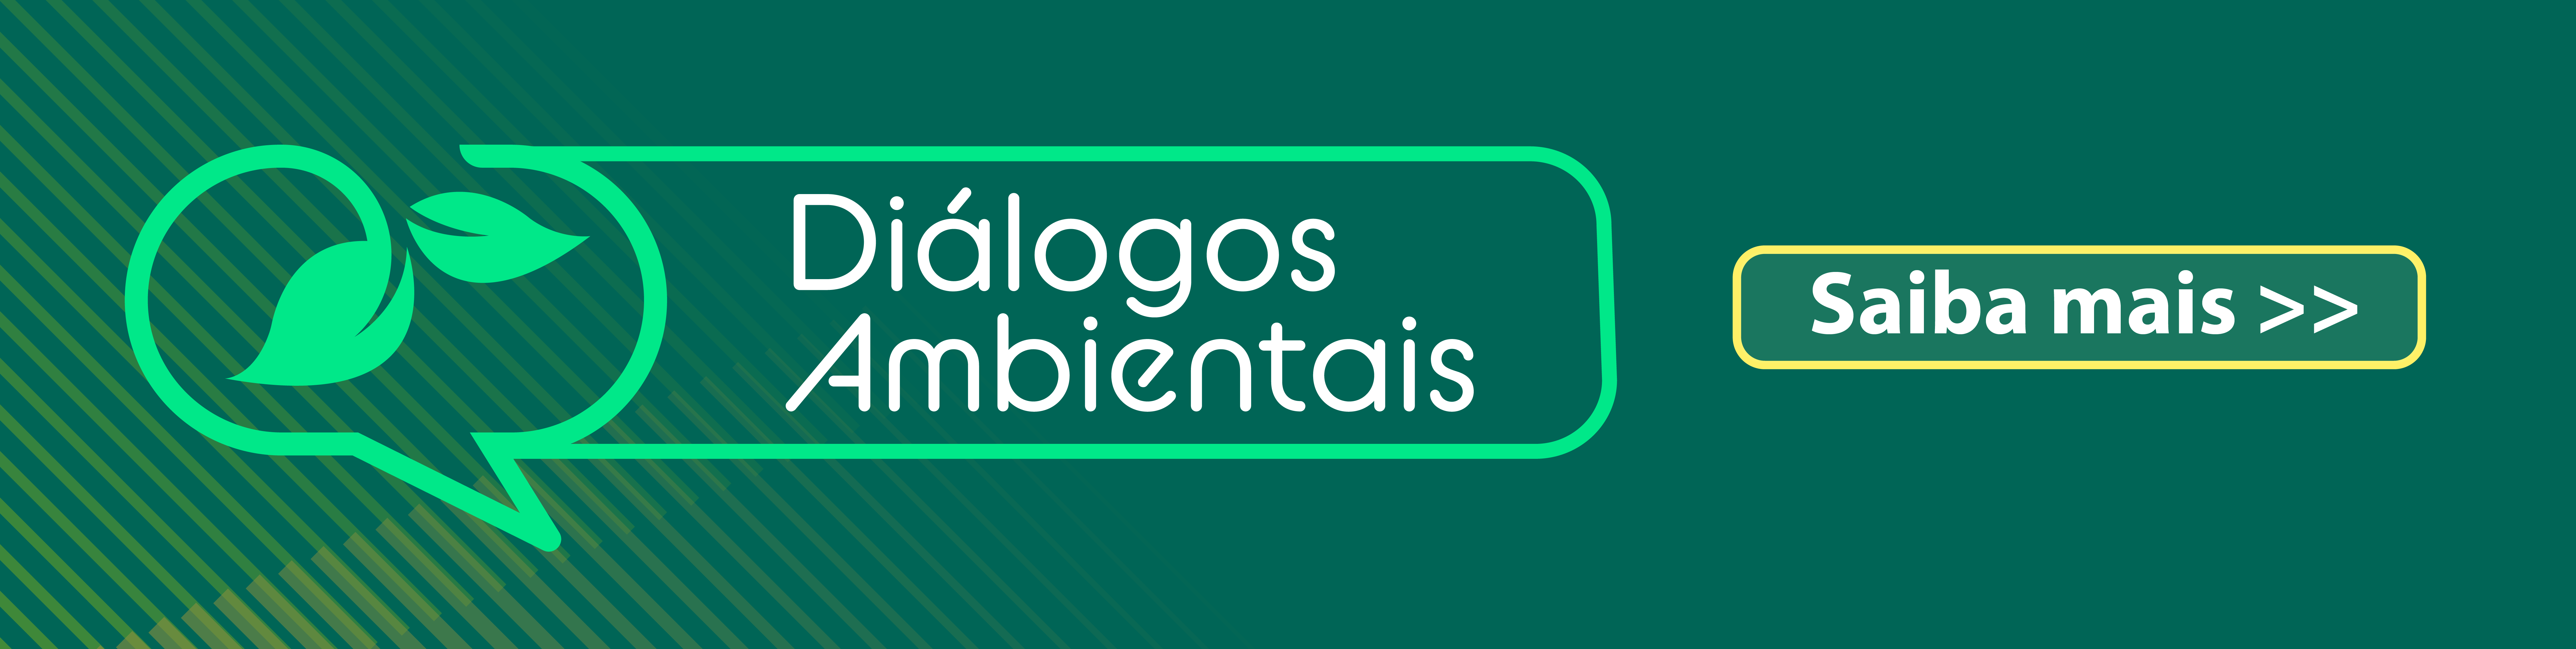 dialogos_ambientais.png - 478,59 kB